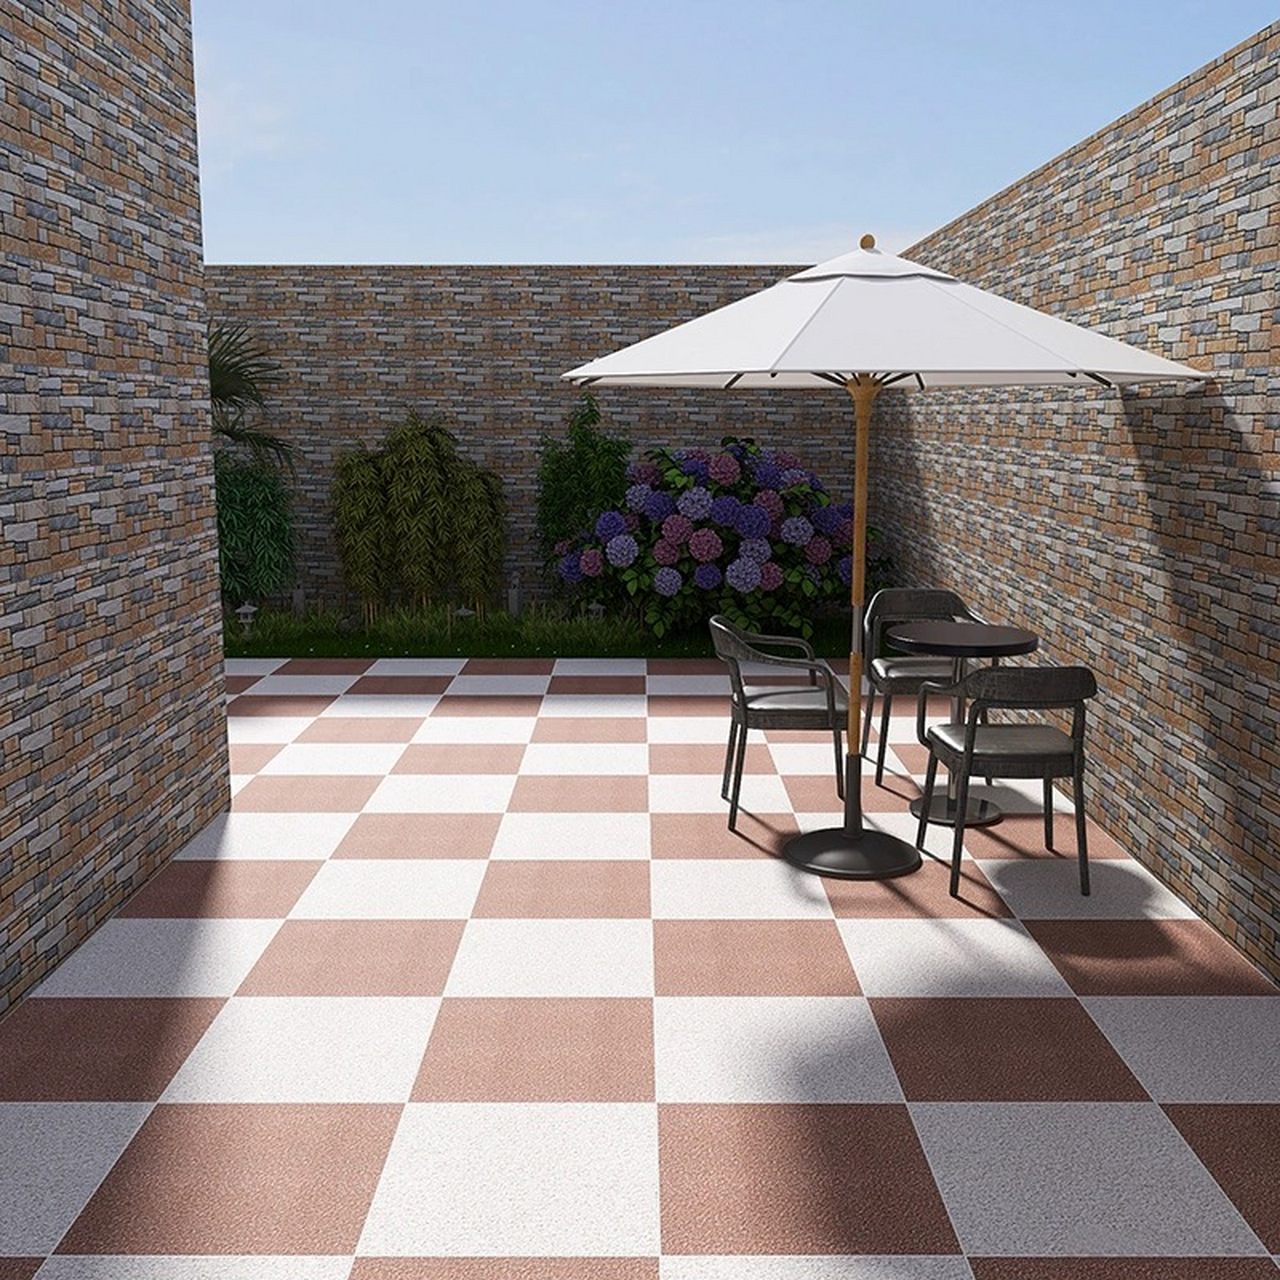 自建房花园老小区地面地铺石各种规格厚度颜色齐全陶瓷地铺砖